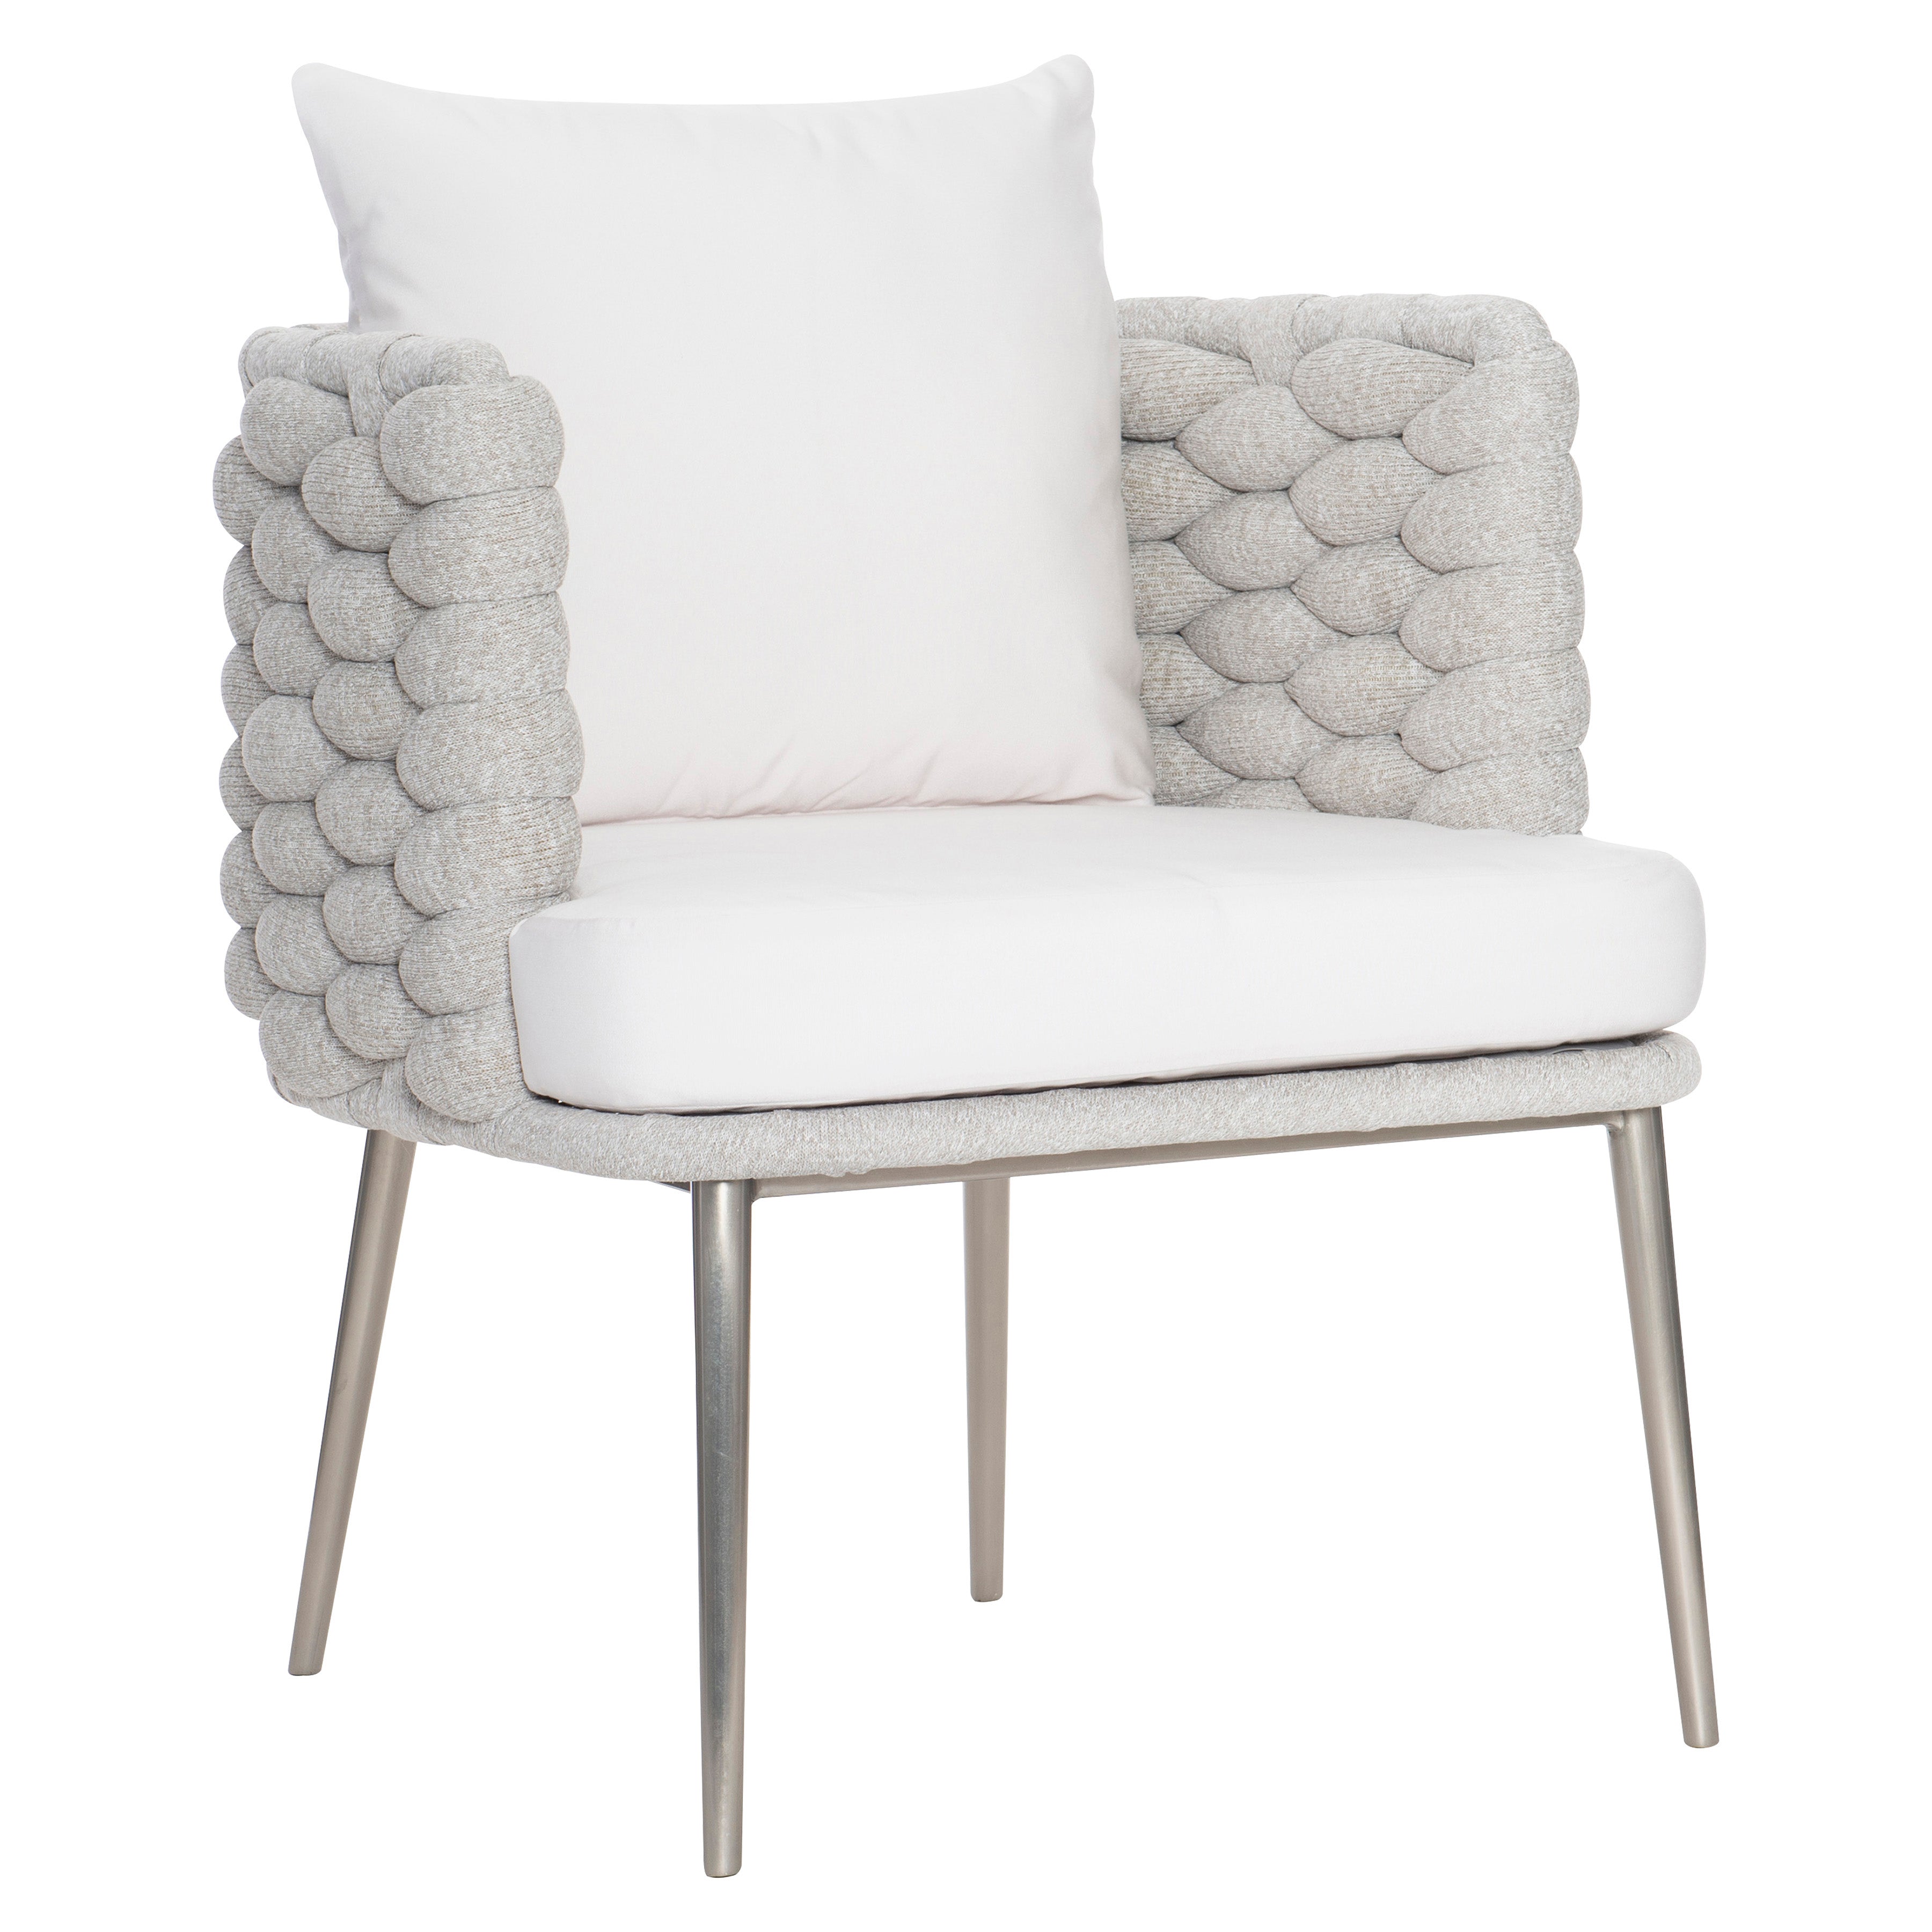 Santa Cruz Outdoor Arm Chair in Nordic Grey